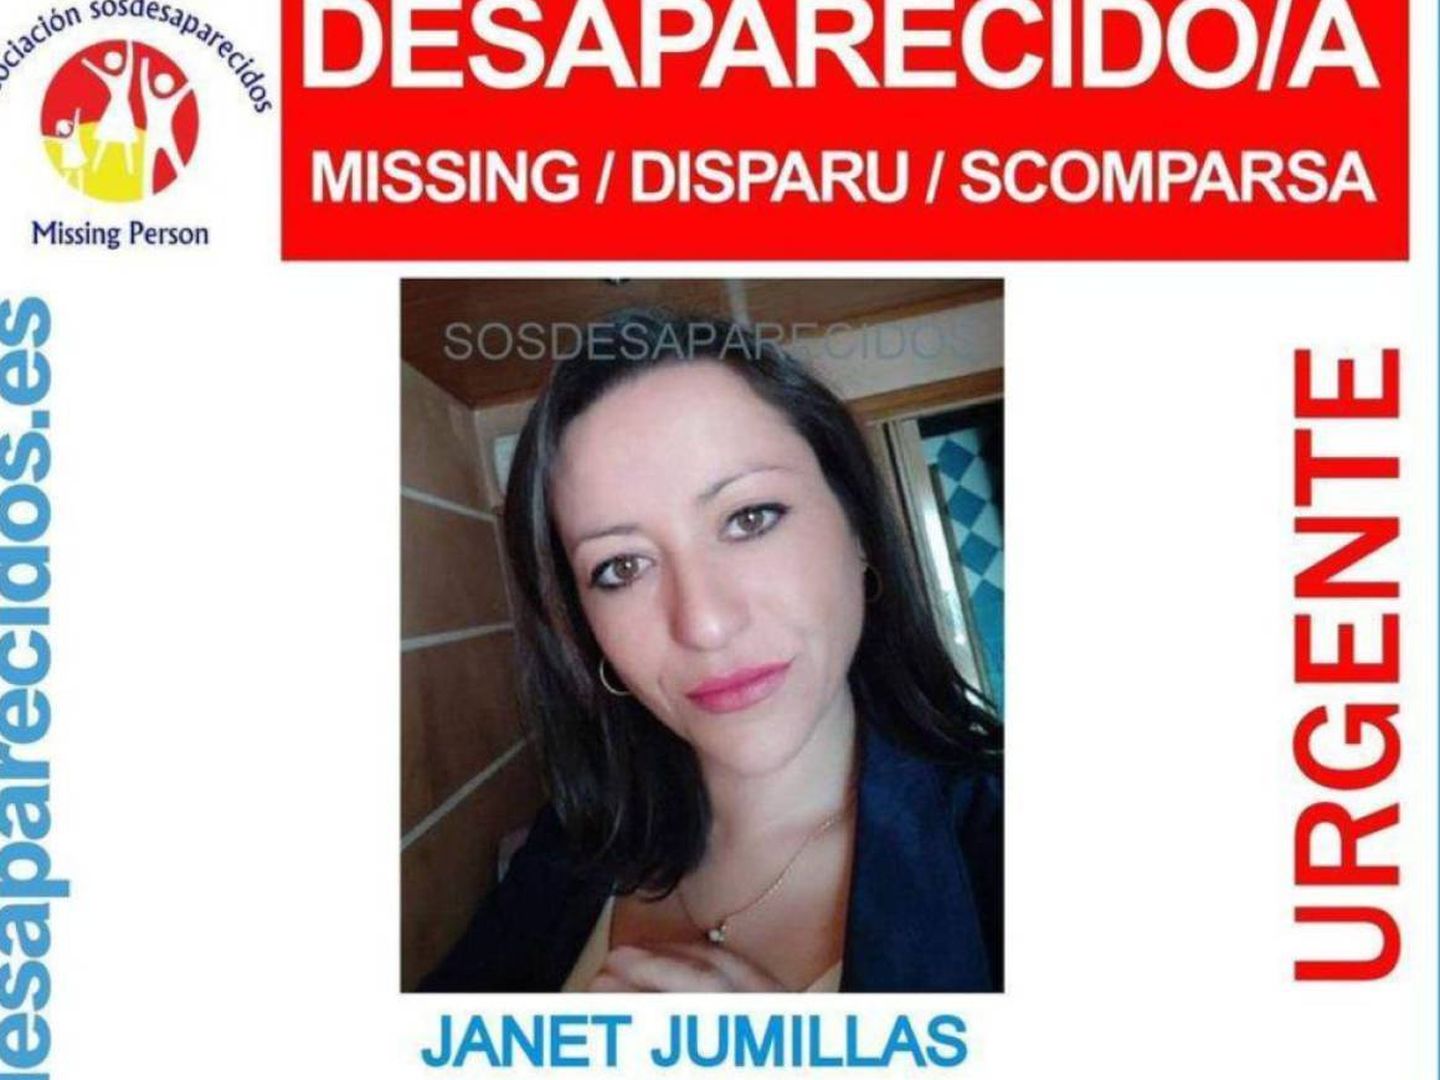 Cartel de la desaparición de Jumillas.